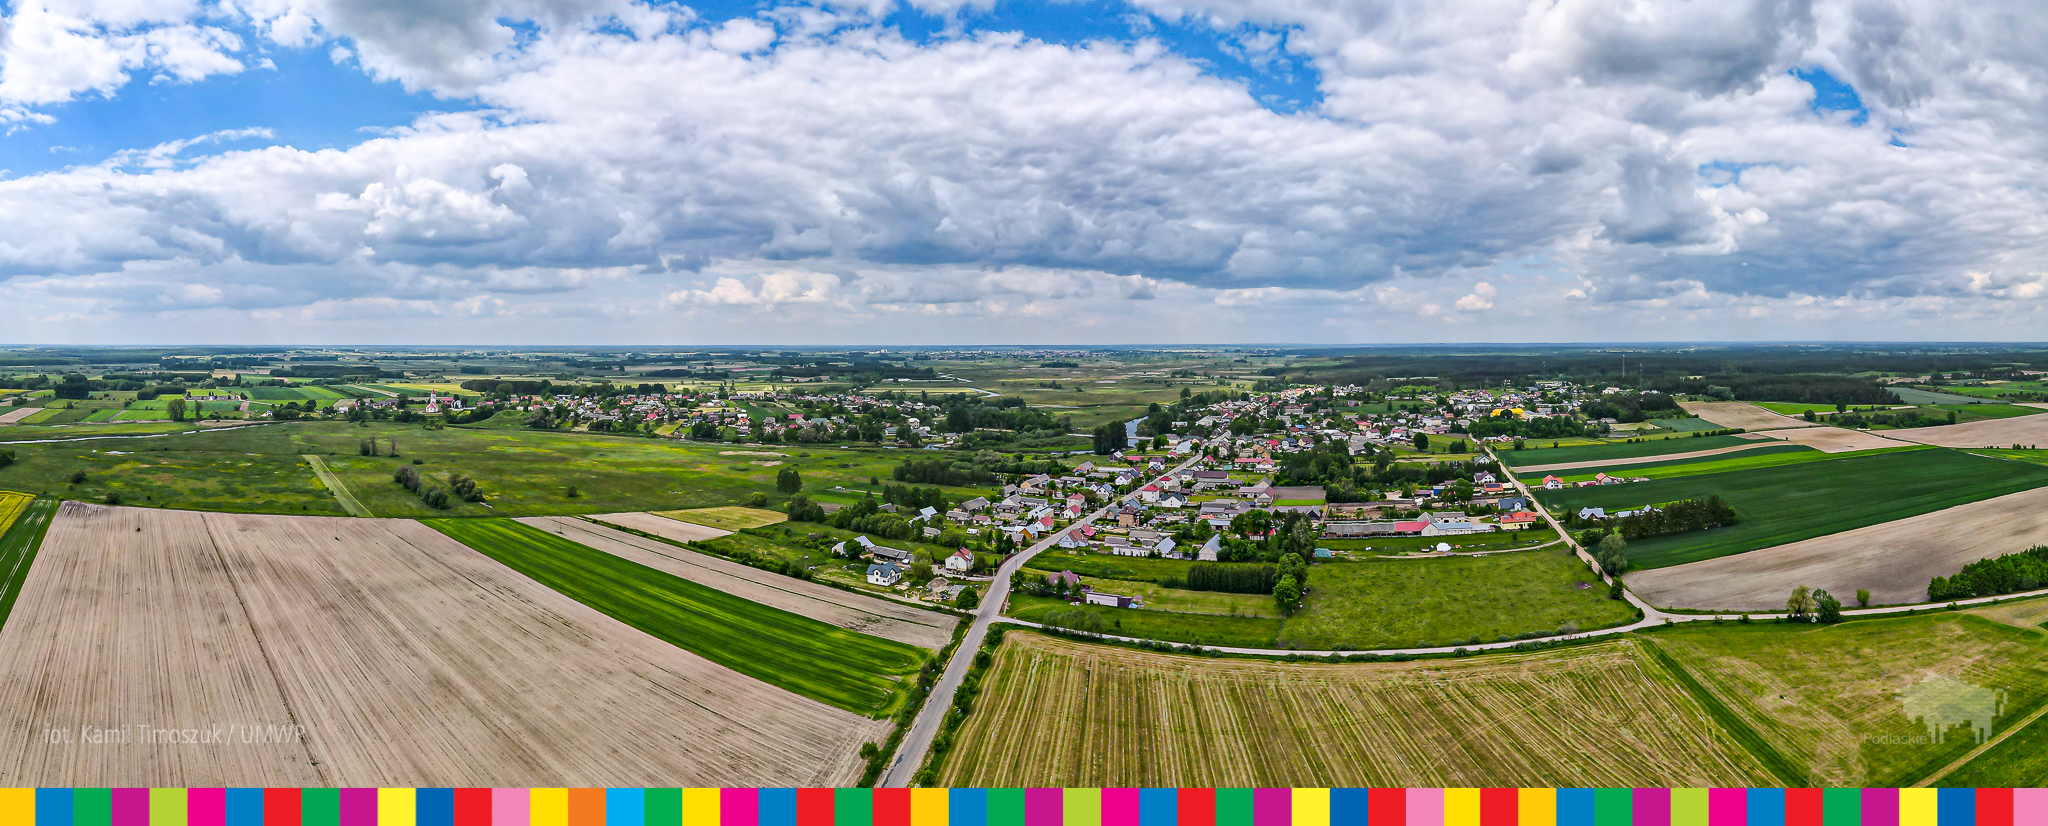 Panoramiczne zdjęcie zrobione dronem przedstawiające Suraż i okoliczne wsie i pola